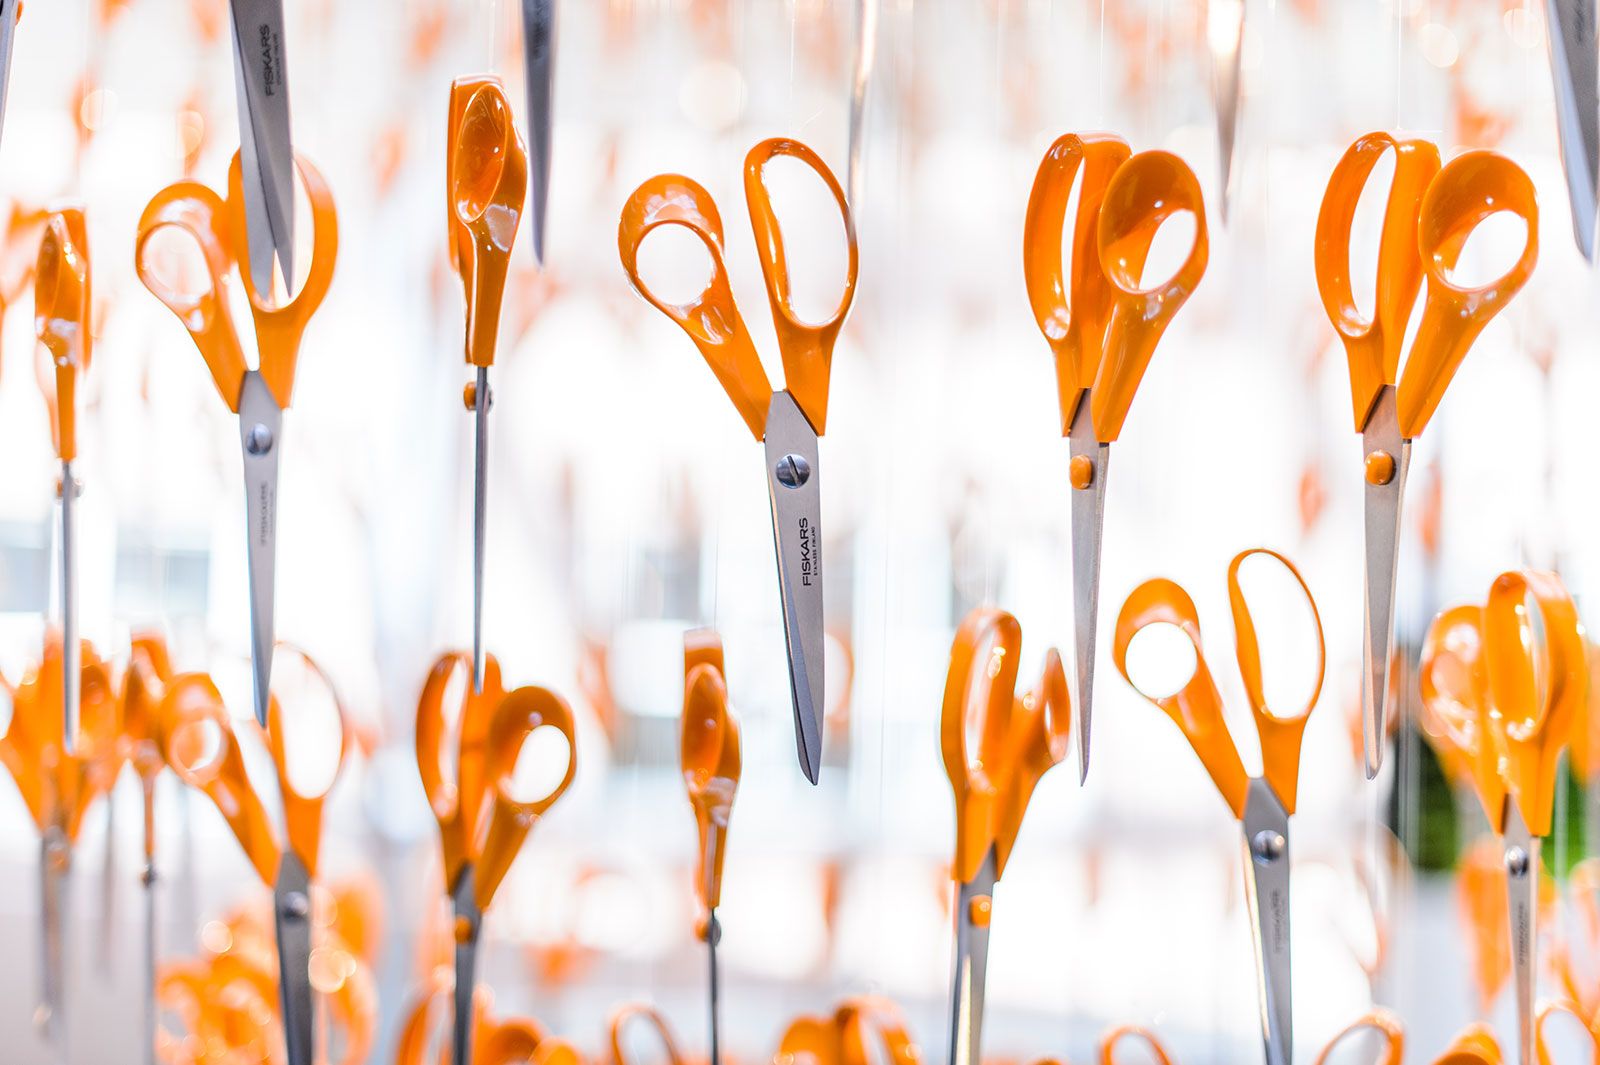 Fiskars ShopBoss: Meet the Most Badass Scissors We've Ever Seen